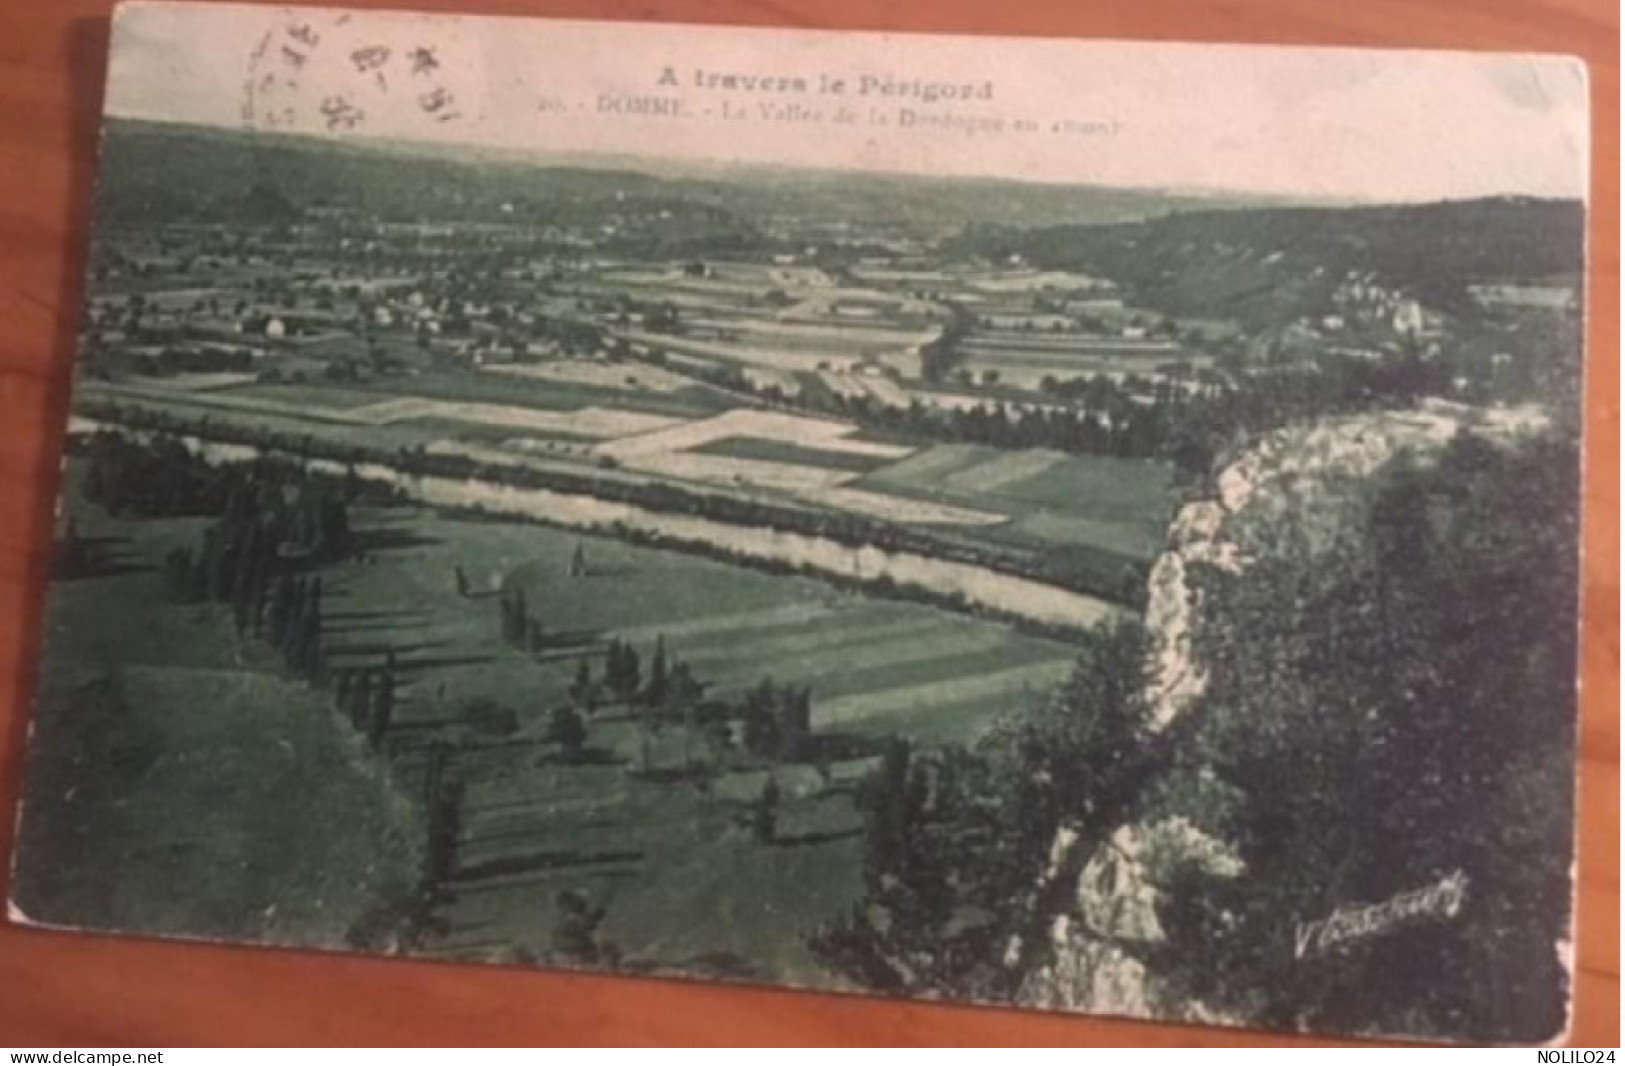 Cpa 24 Domme, La Vallée De La Dordogne En Amont, "à Travers Le Périgord" Colorisée Verte, éd Tassaint, écrite 1936 - Domme